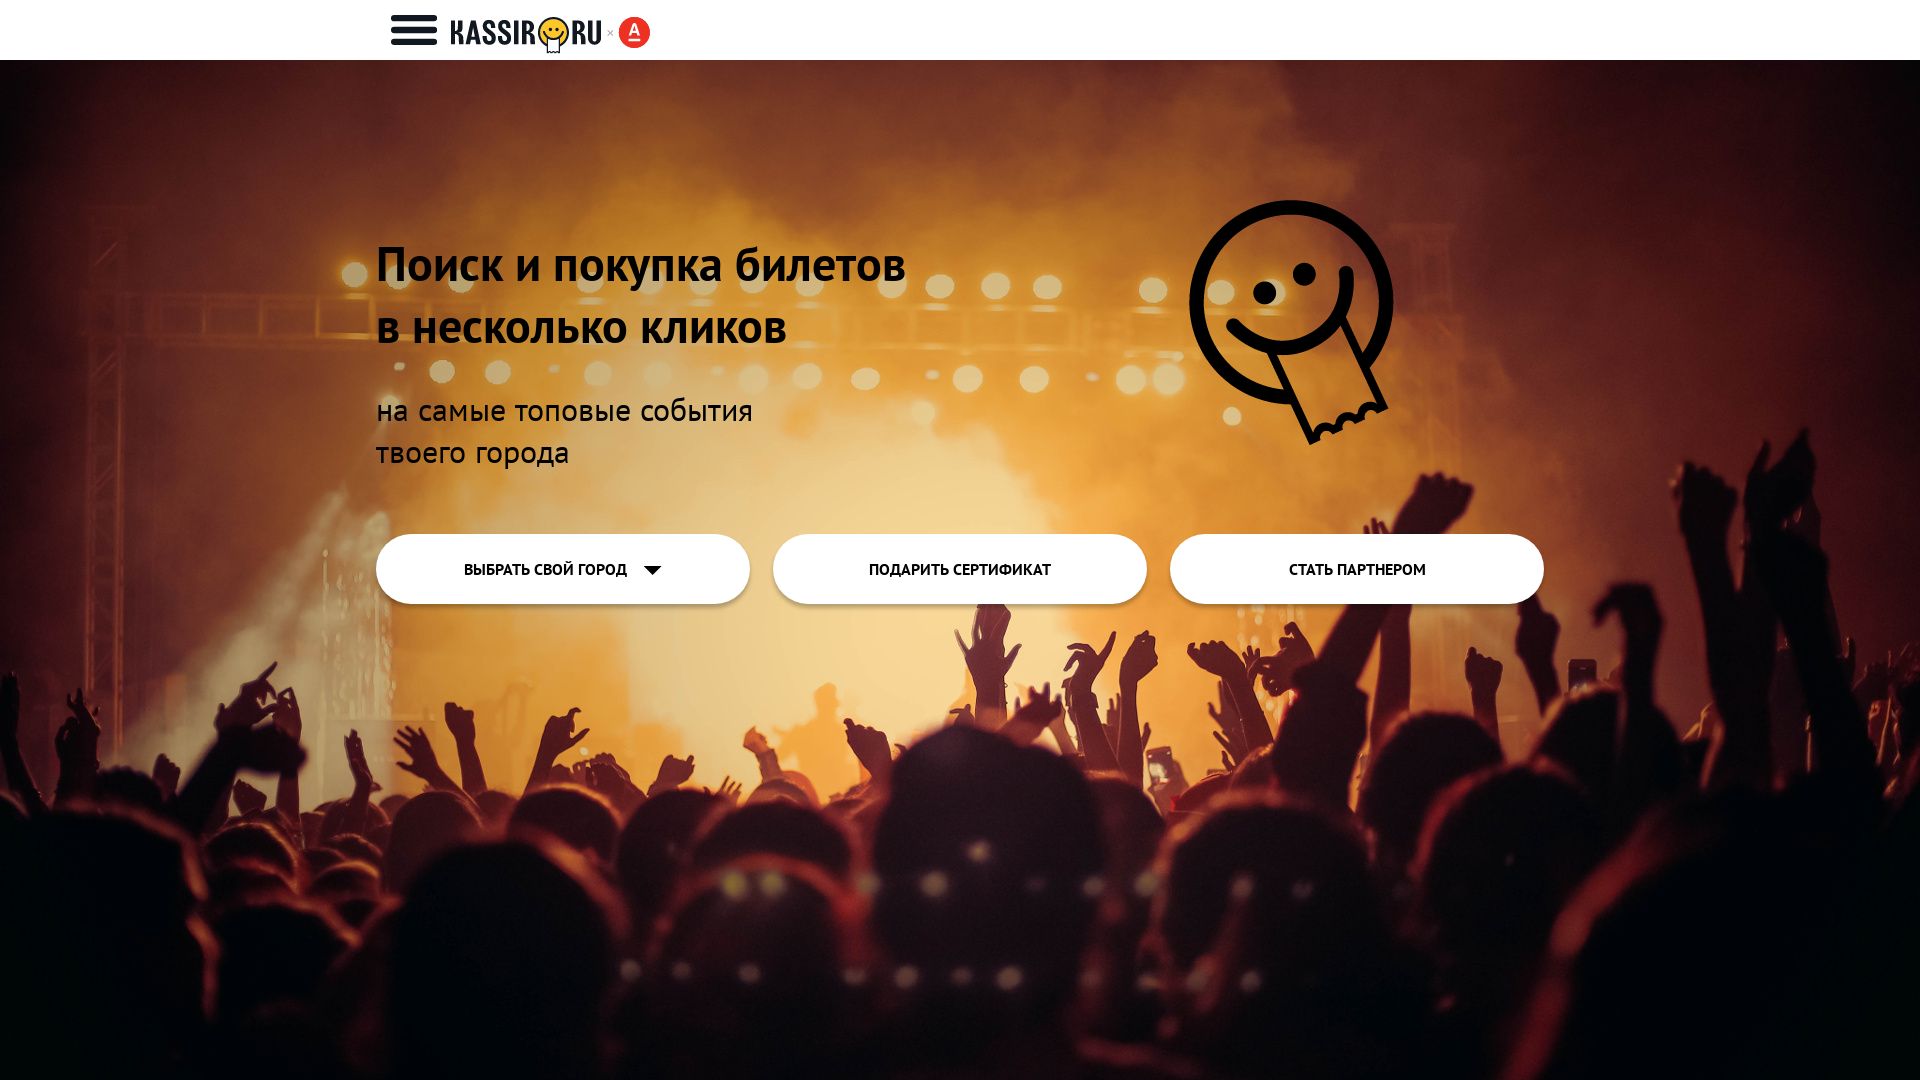 Website status kassir.ru is   ONLINE